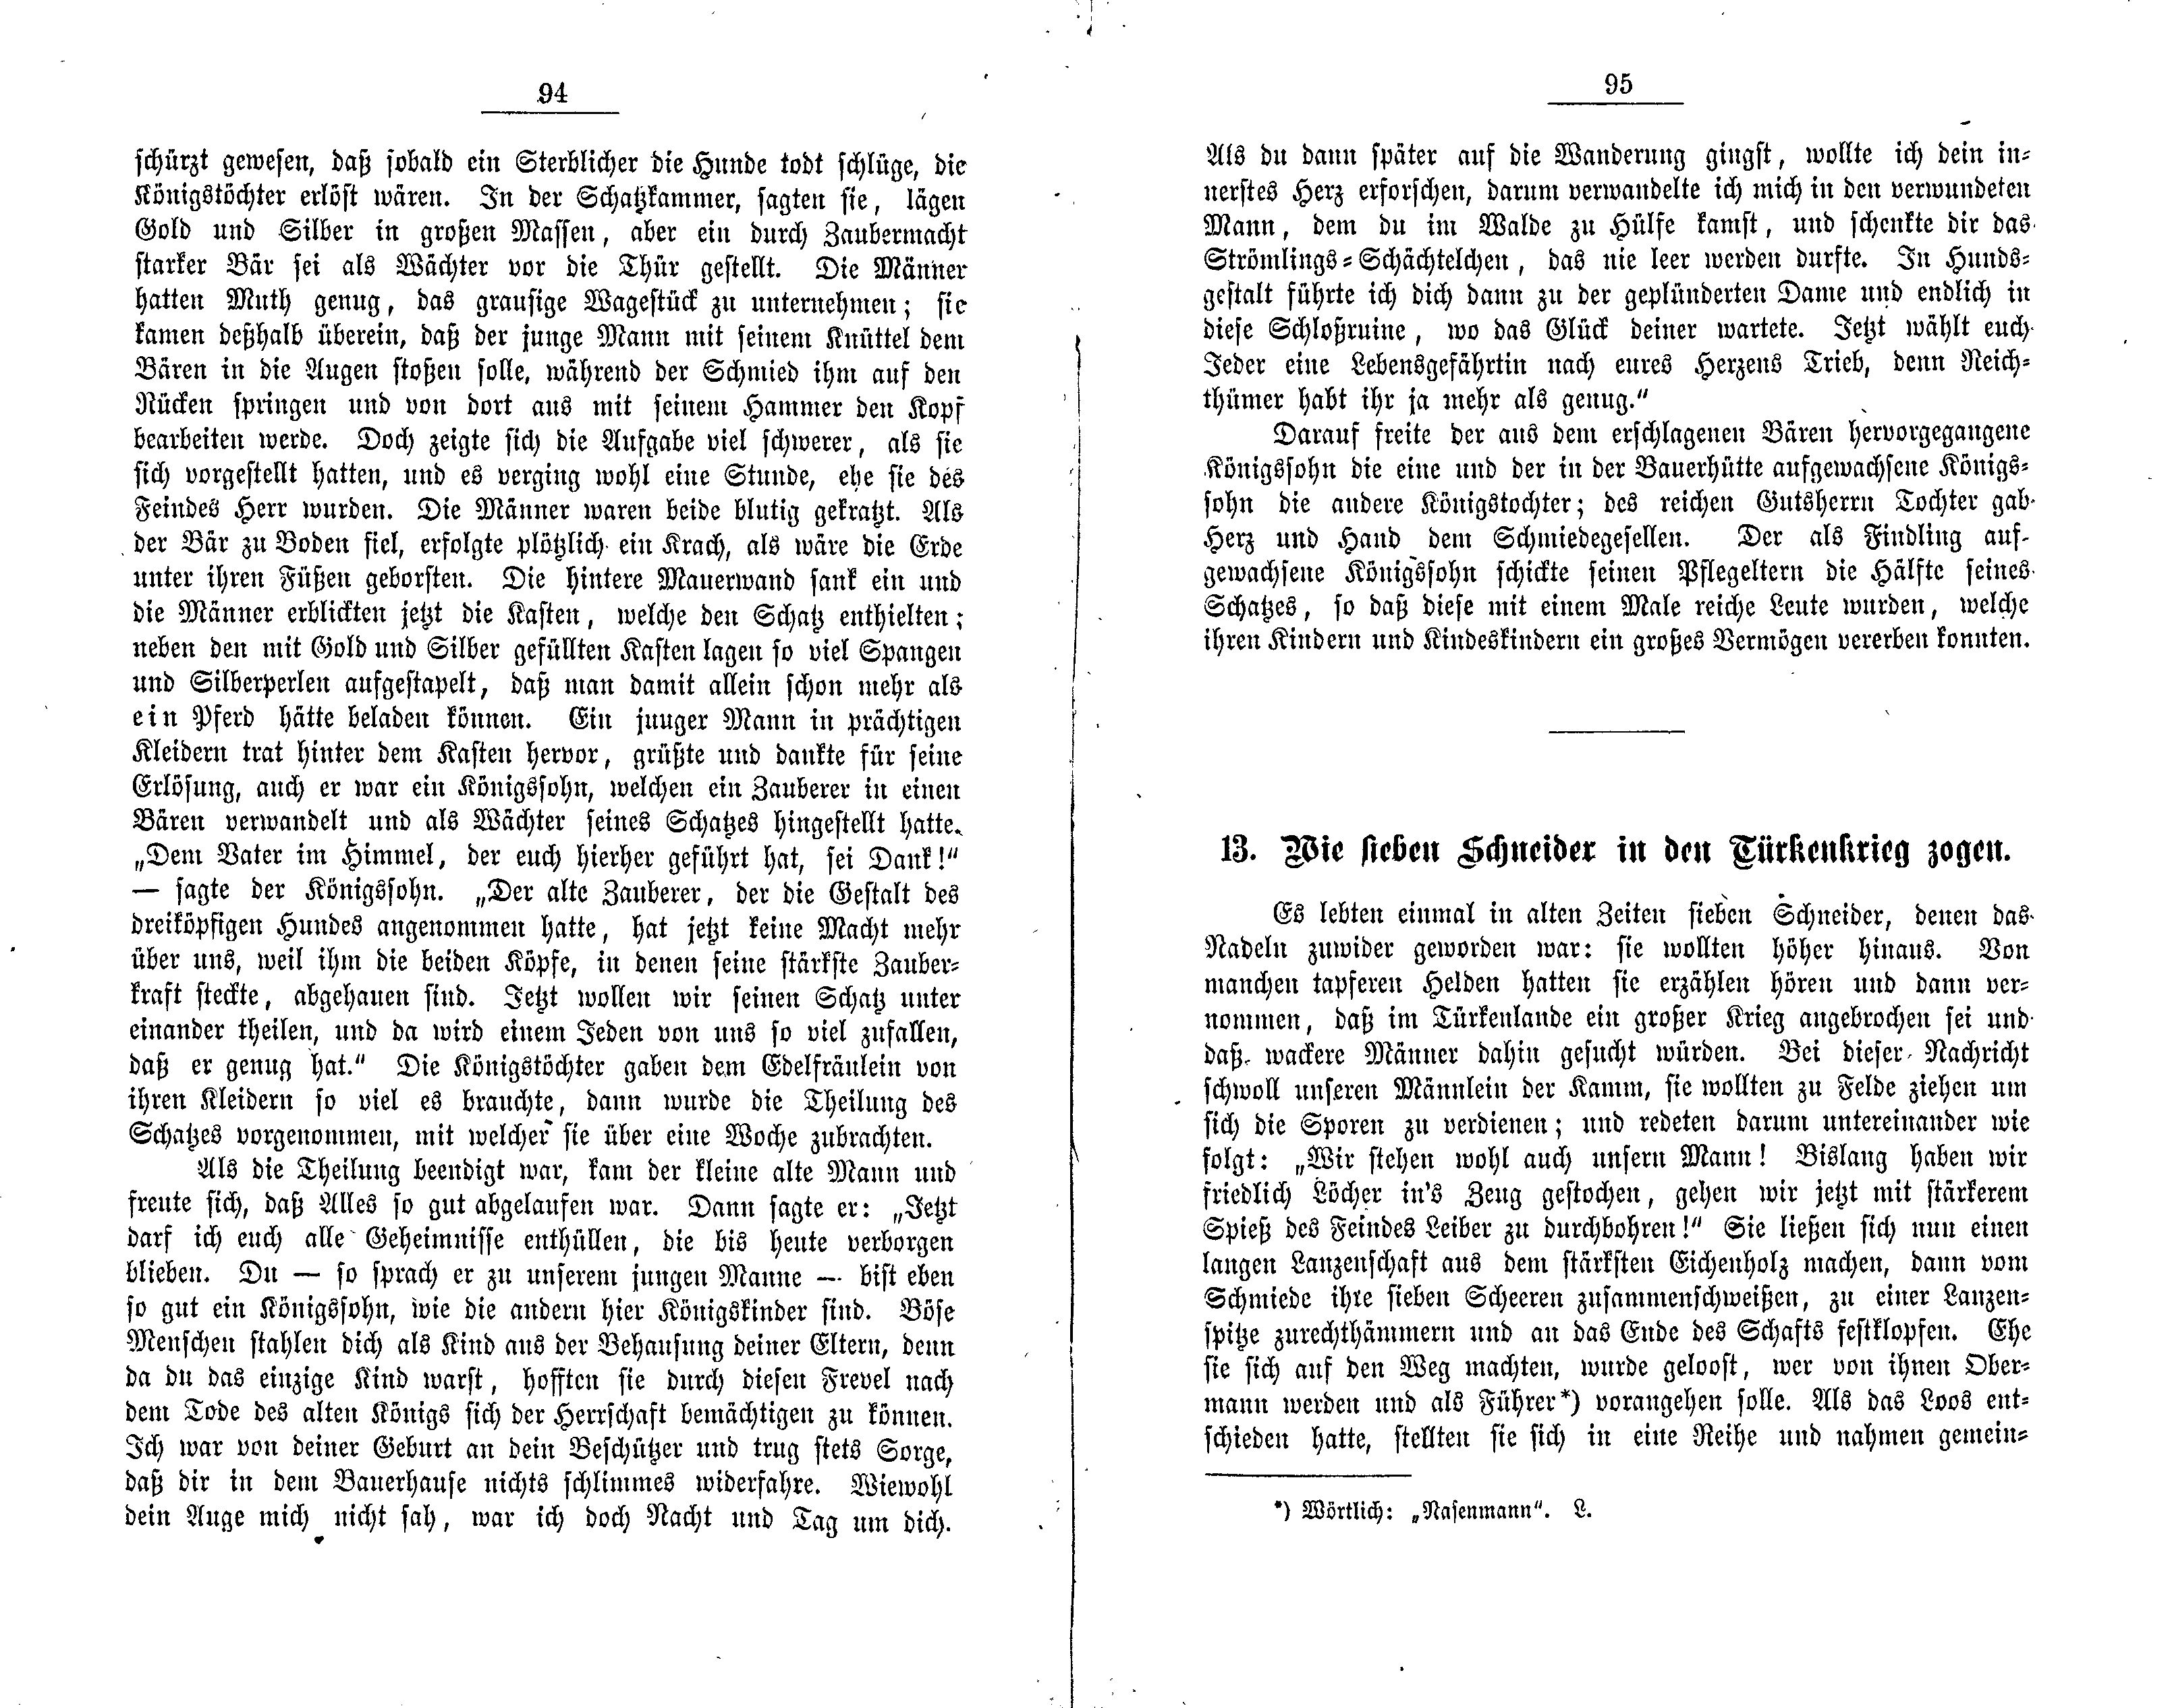 Wie sieben Schneider in den Türkenkrieg zogen (1881) | 1. (94-95) Põhitekst